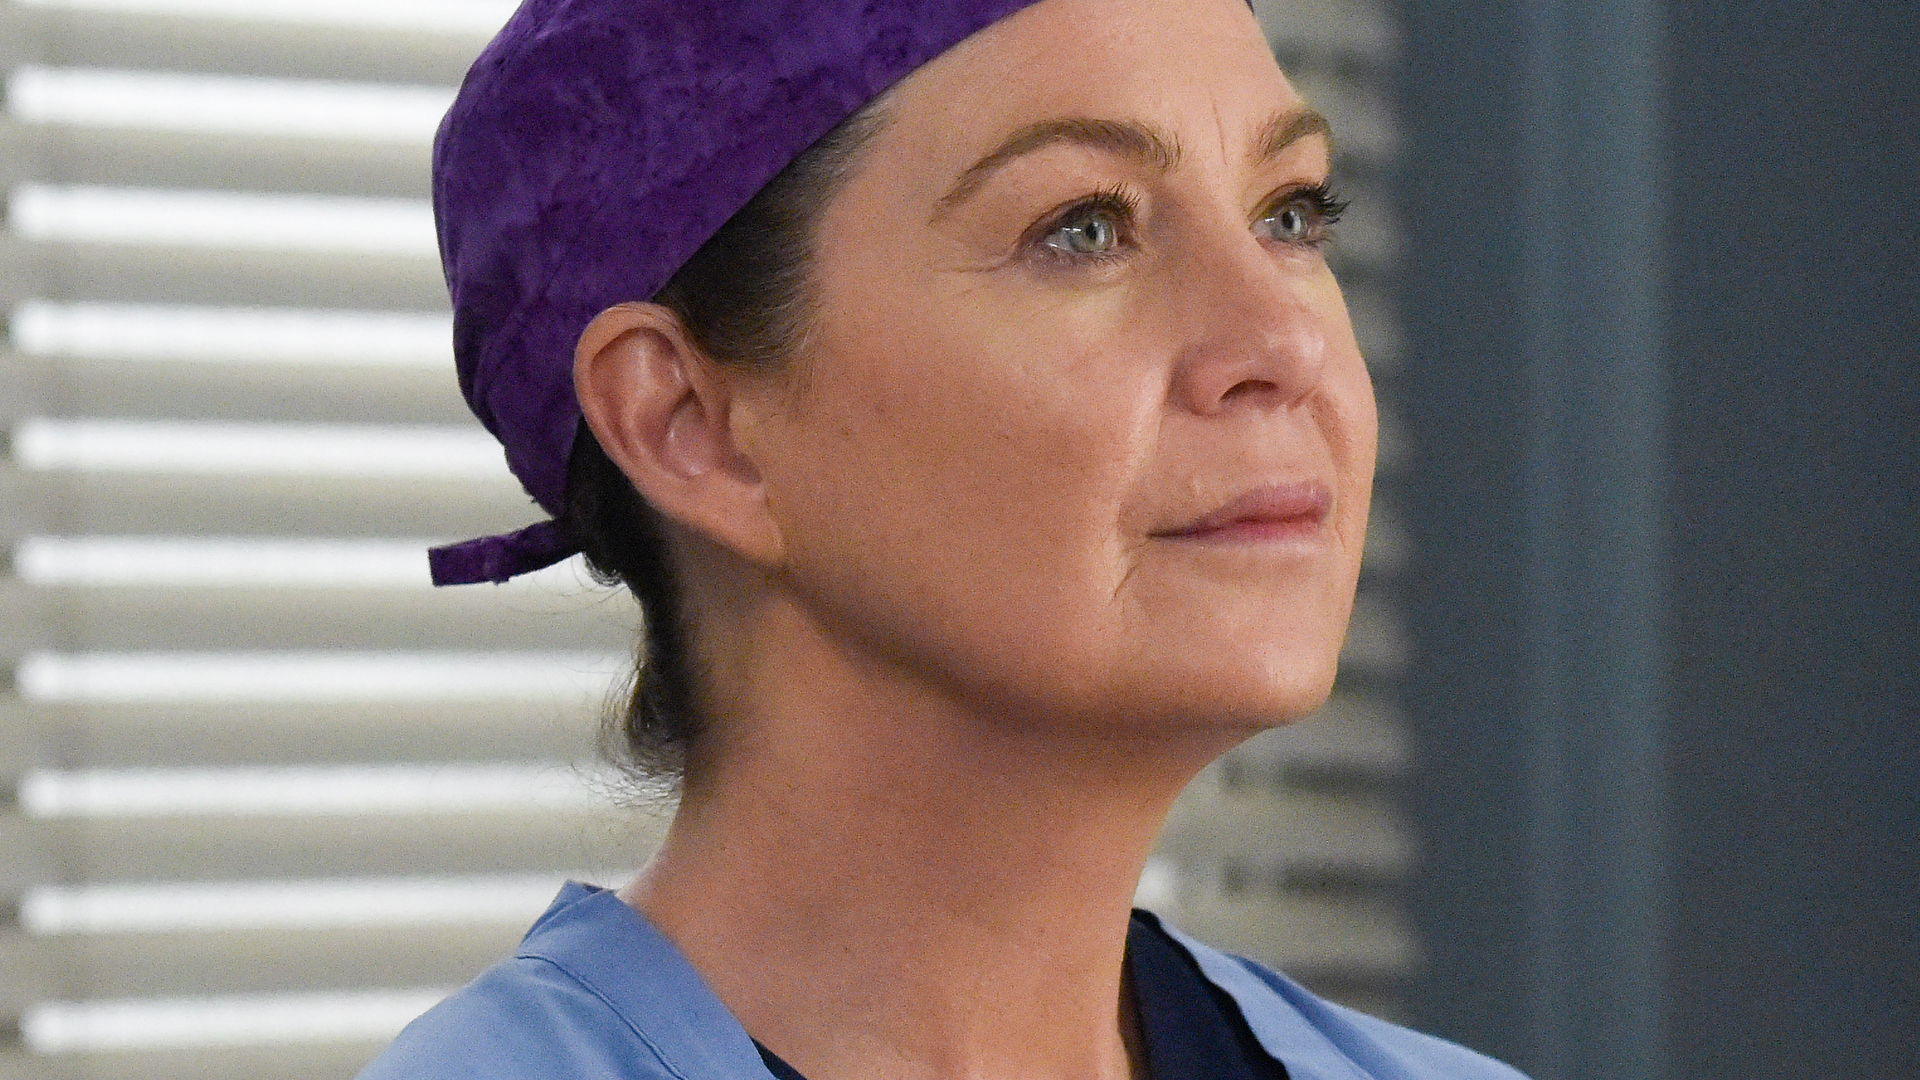 Ellen Pompeo as Meredith Grey wearing a scrub cap on 'Grey's Anatomy' Season 16